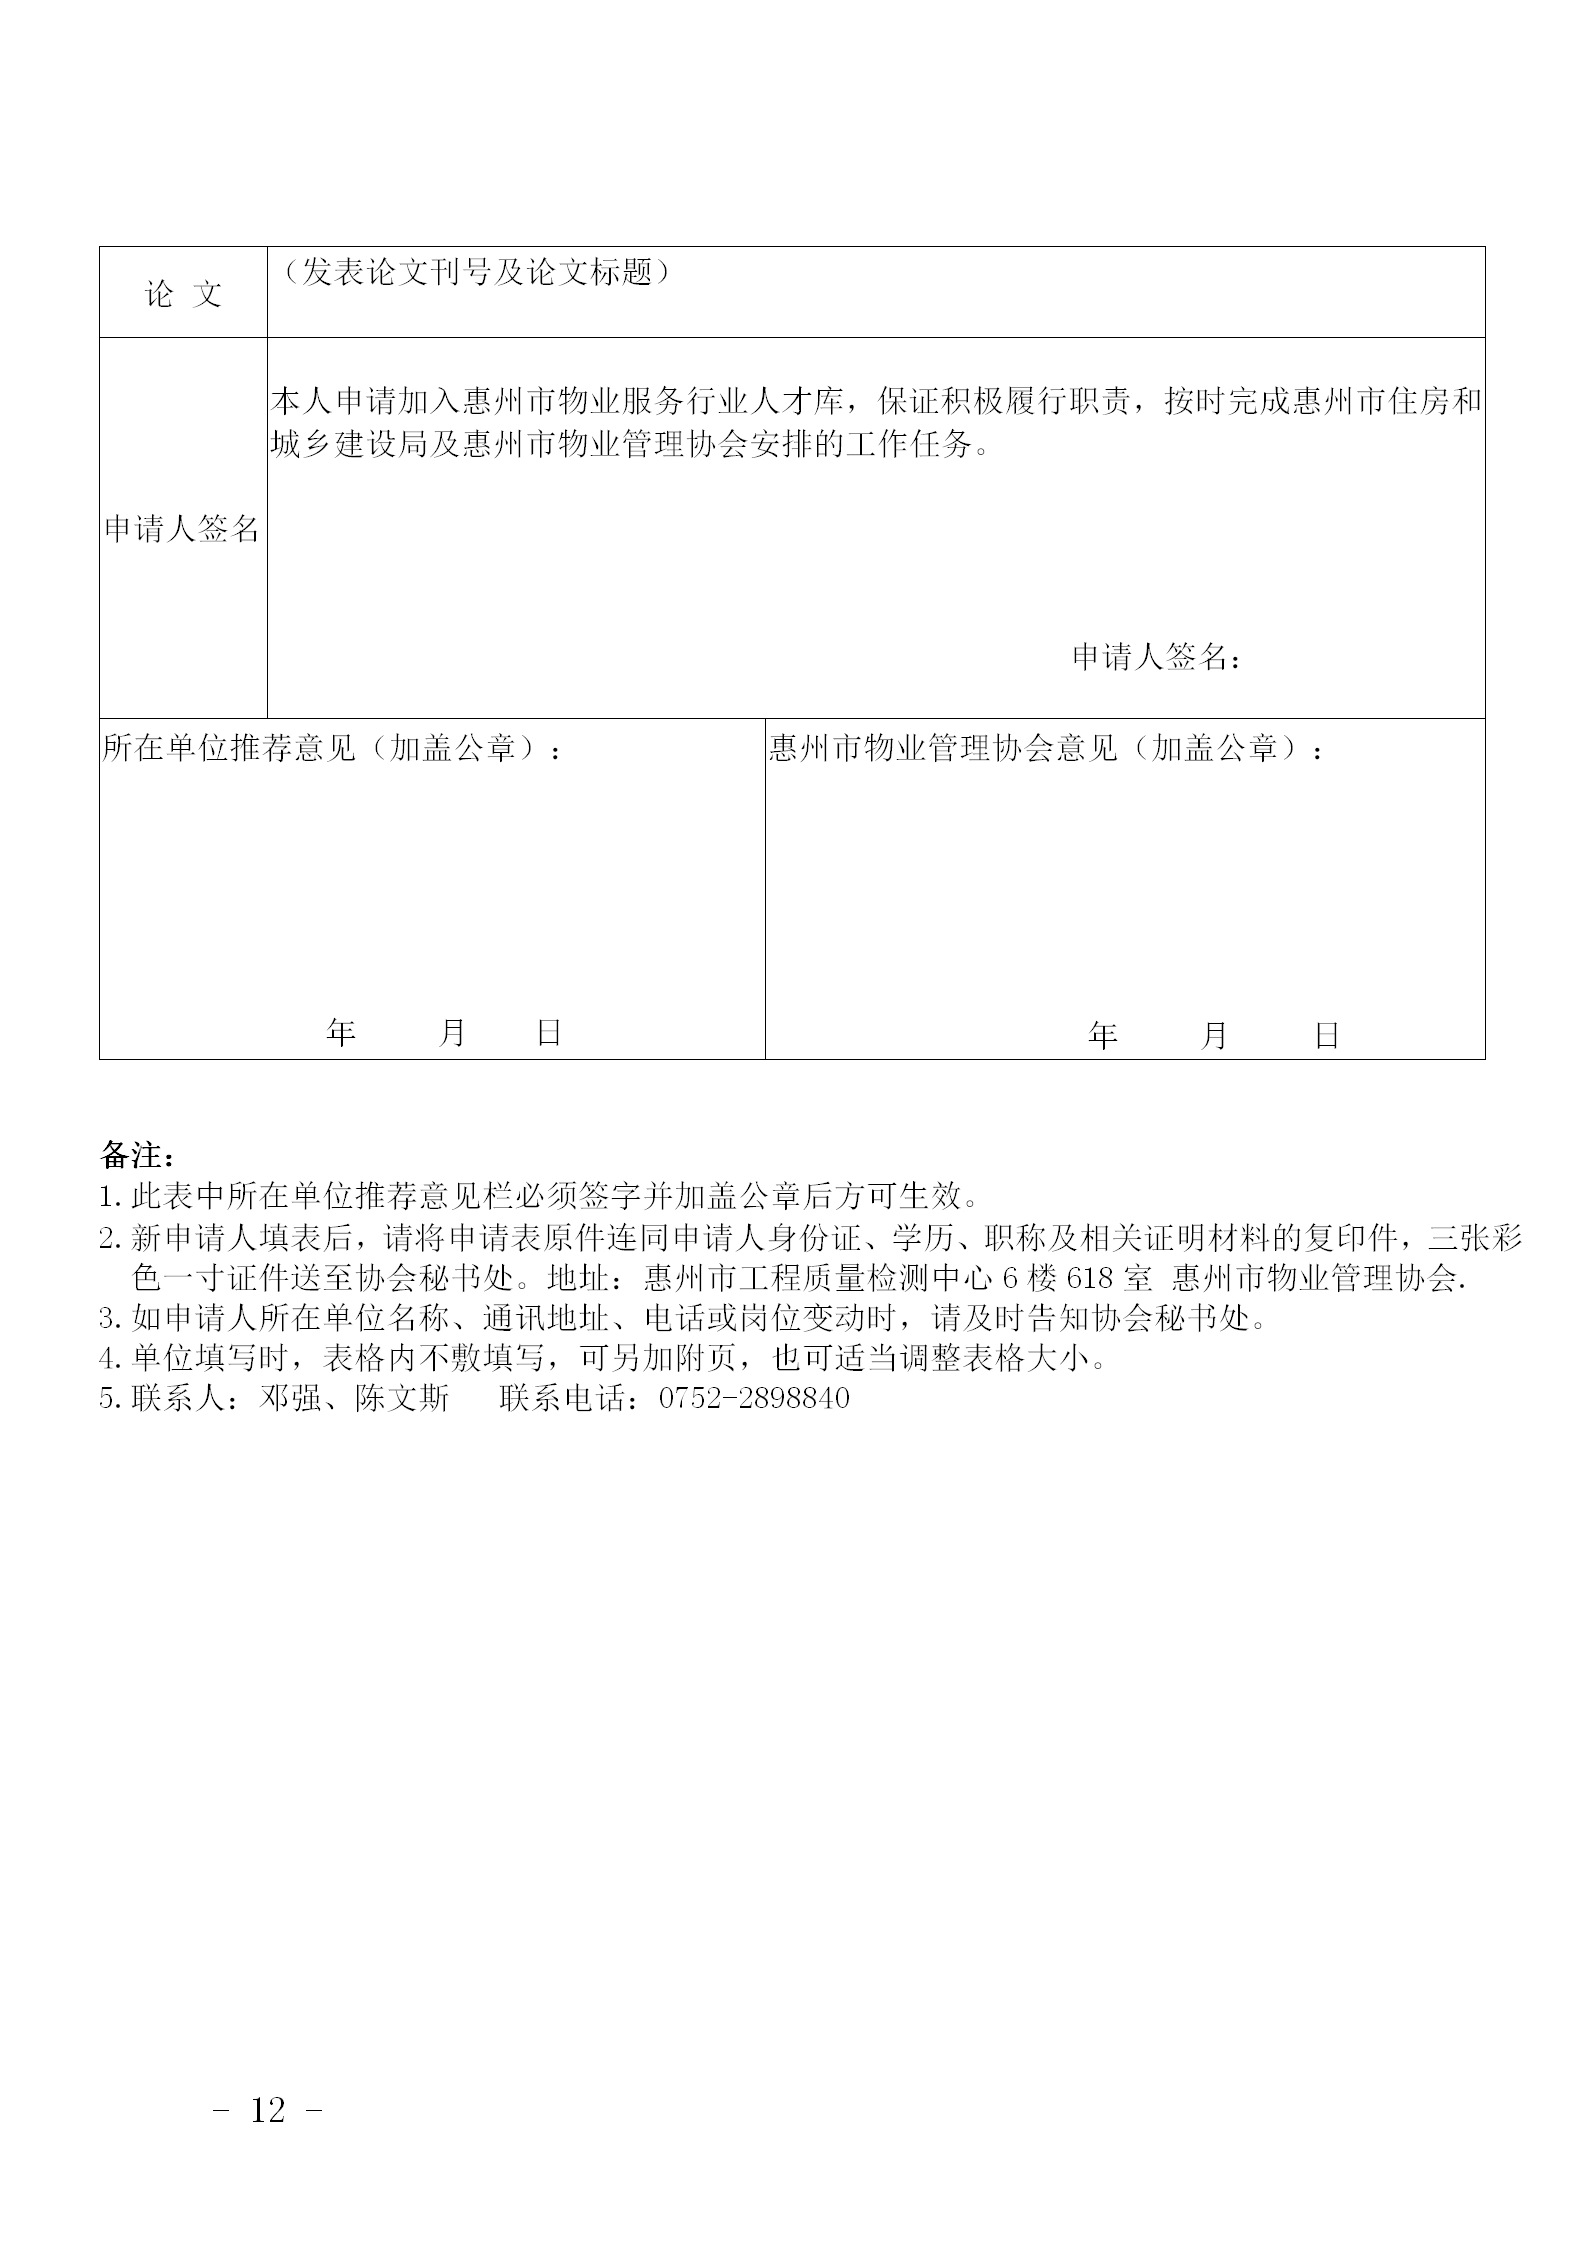 关于公开选聘惠州市物业服务行业专业人才的通知0109_12.png